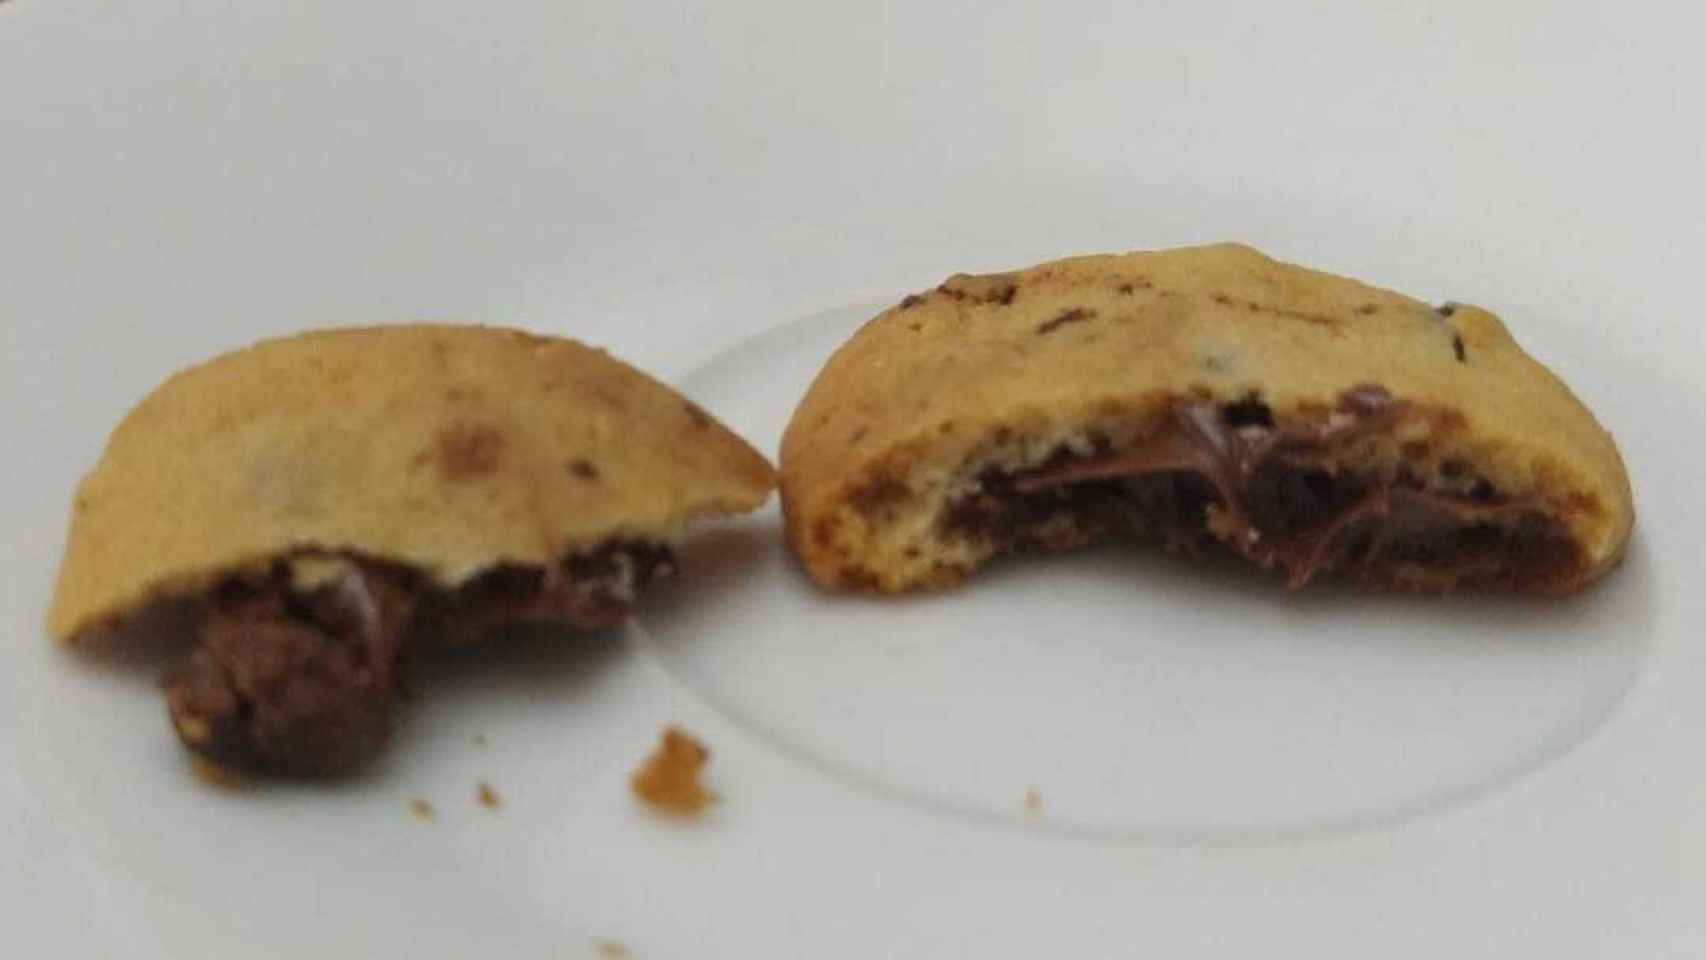 Las 'cookies' de Nocilla tradicional, a nuestro juicio, tienen más cantidad de crema que las de Nocilla blanca.